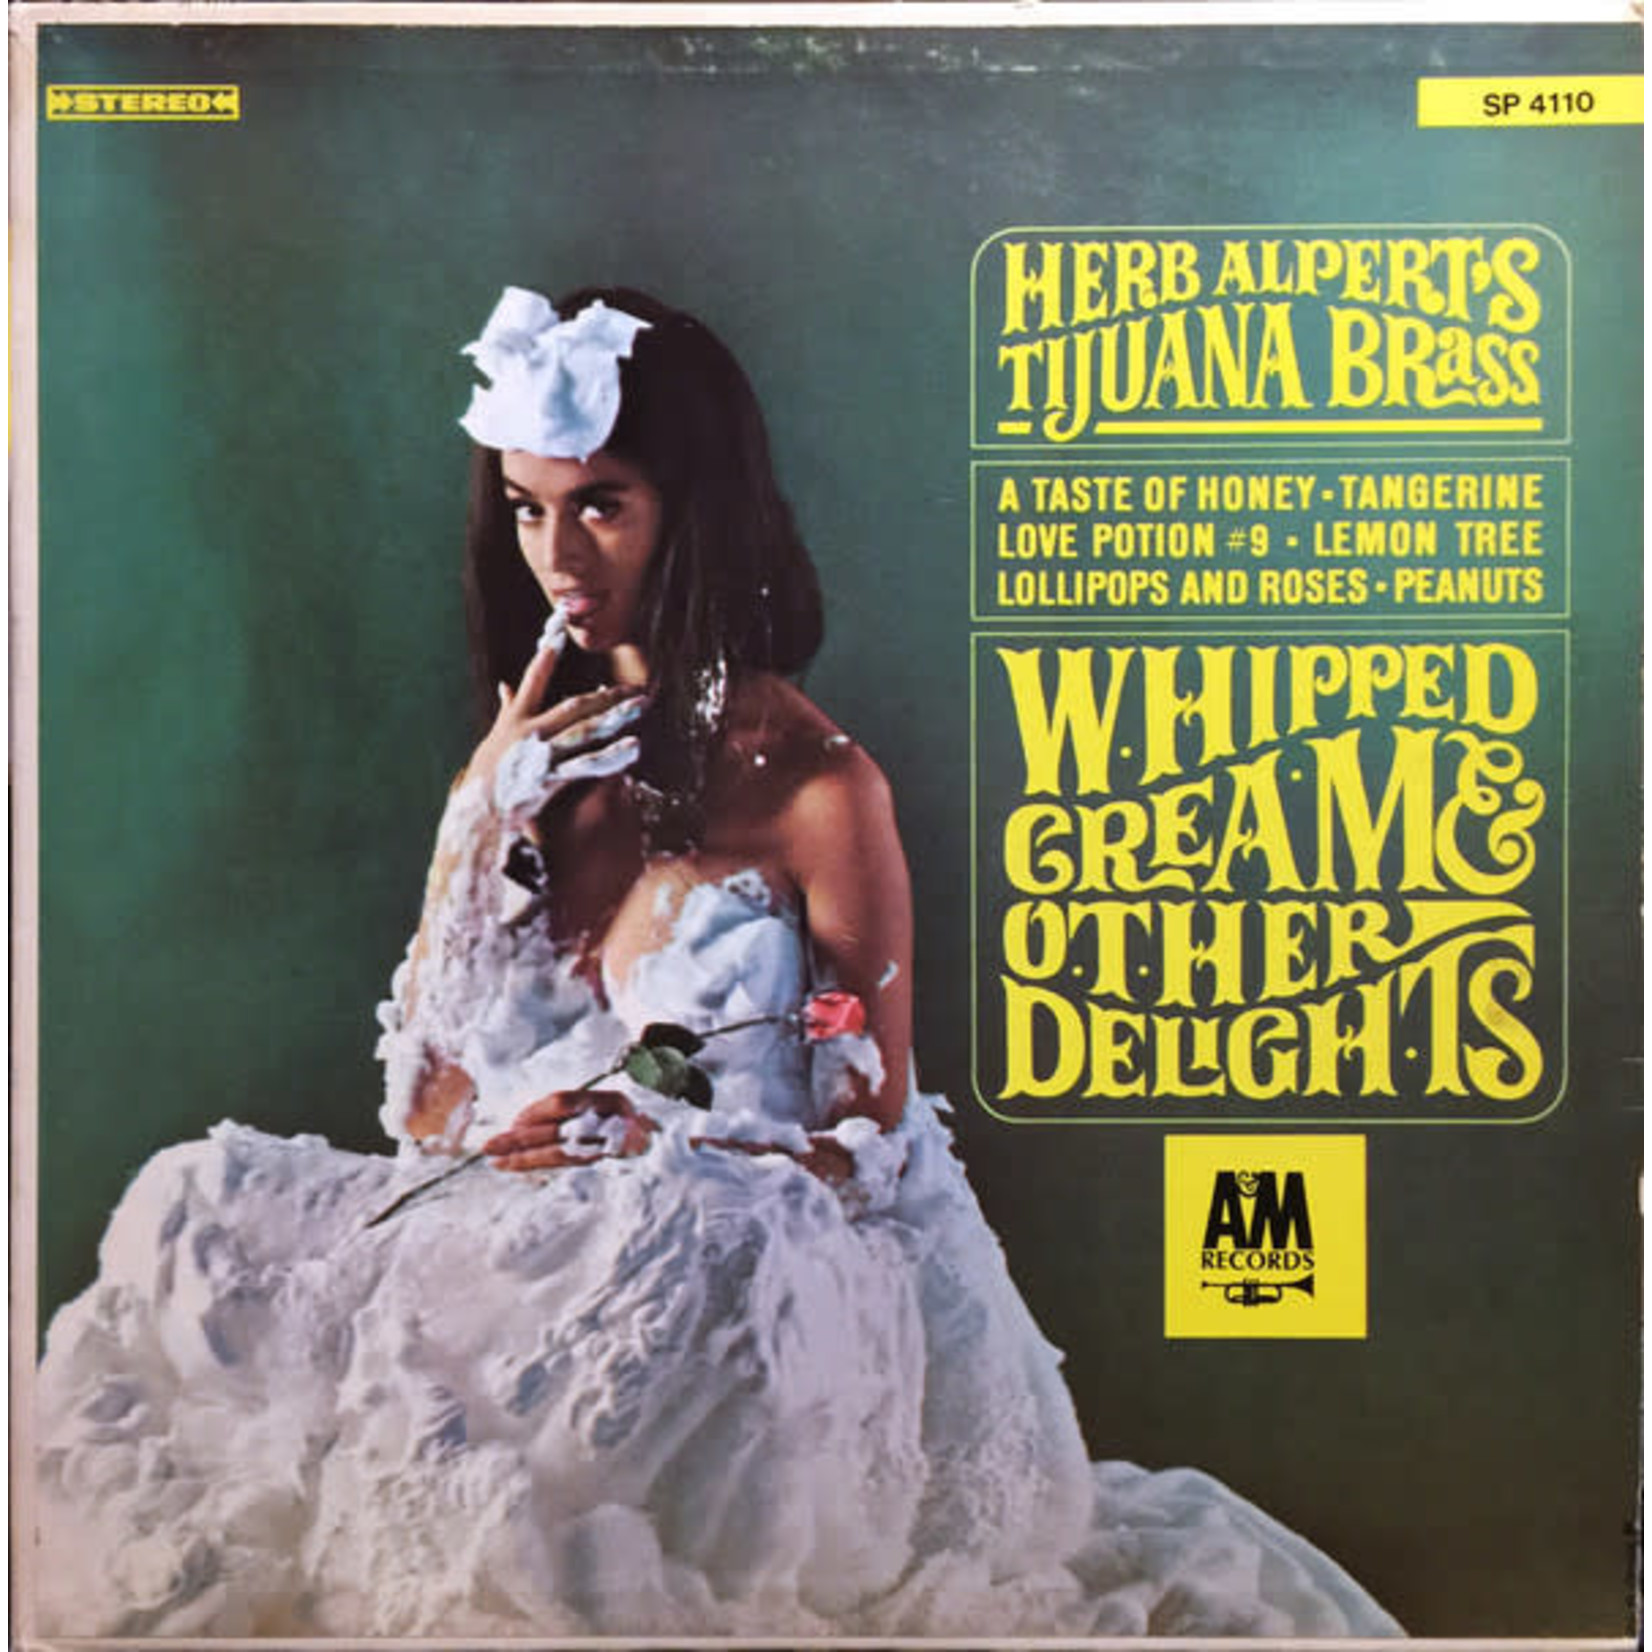 Herb Alpert Herb Alpert's Tijuana Brass – Whipped Cream & Other Delights (VG, 1965, LP, A&M Records – SP 4110)